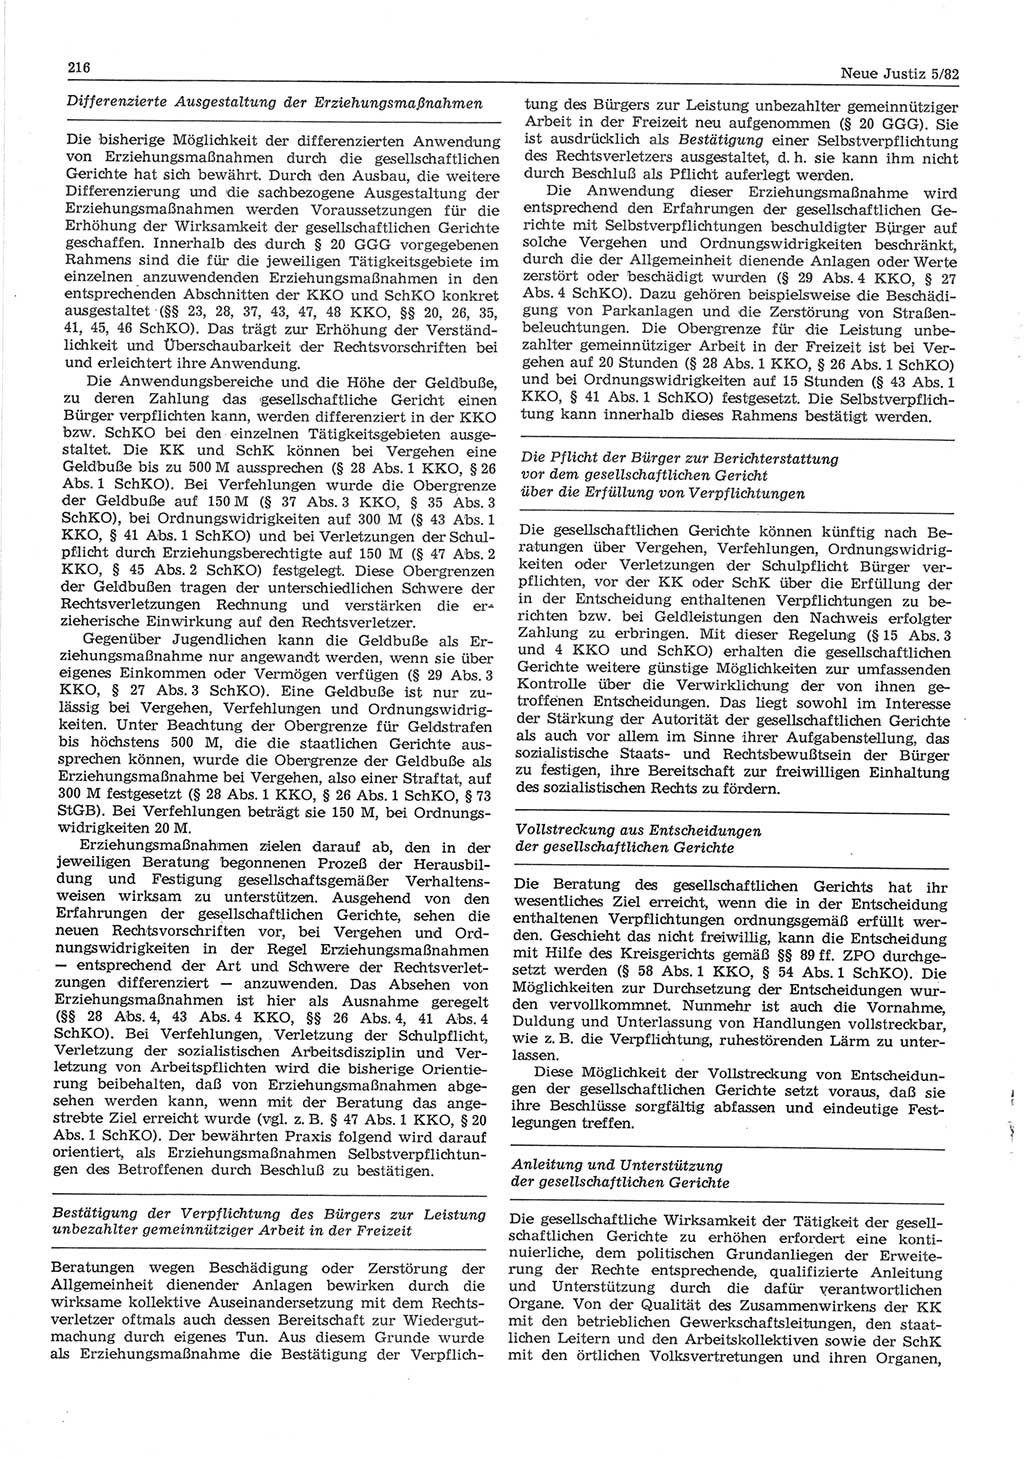 Neue Justiz (NJ), Zeitschrift für sozialistisches Recht und Gesetzlichkeit [Deutsche Demokratische Republik (DDR)], 36. Jahrgang 1982, Seite 216 (NJ DDR 1982, S. 216)